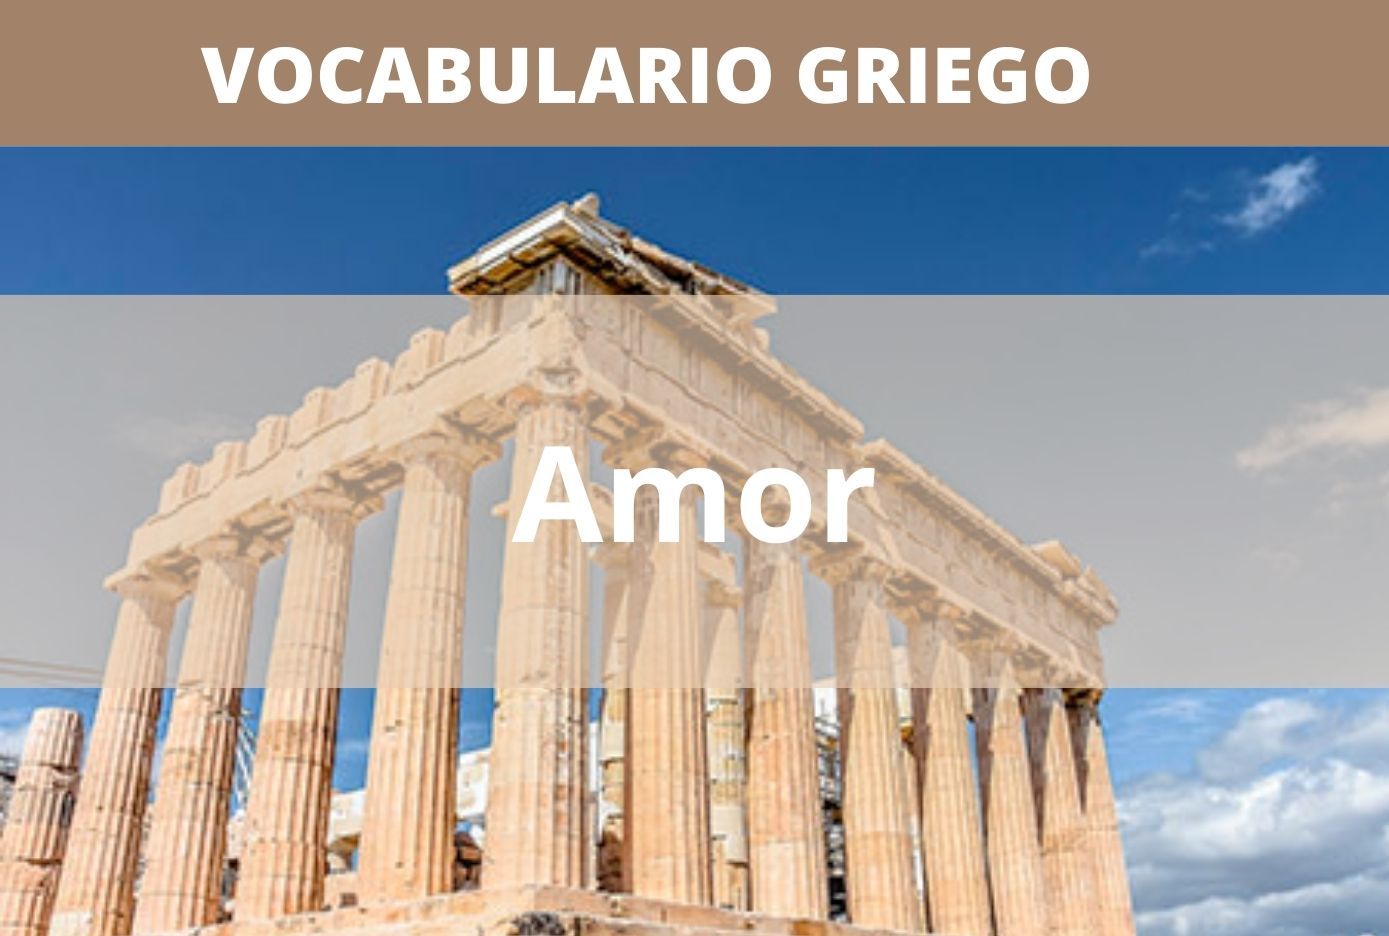 listado de palabras en griego acerca del amor